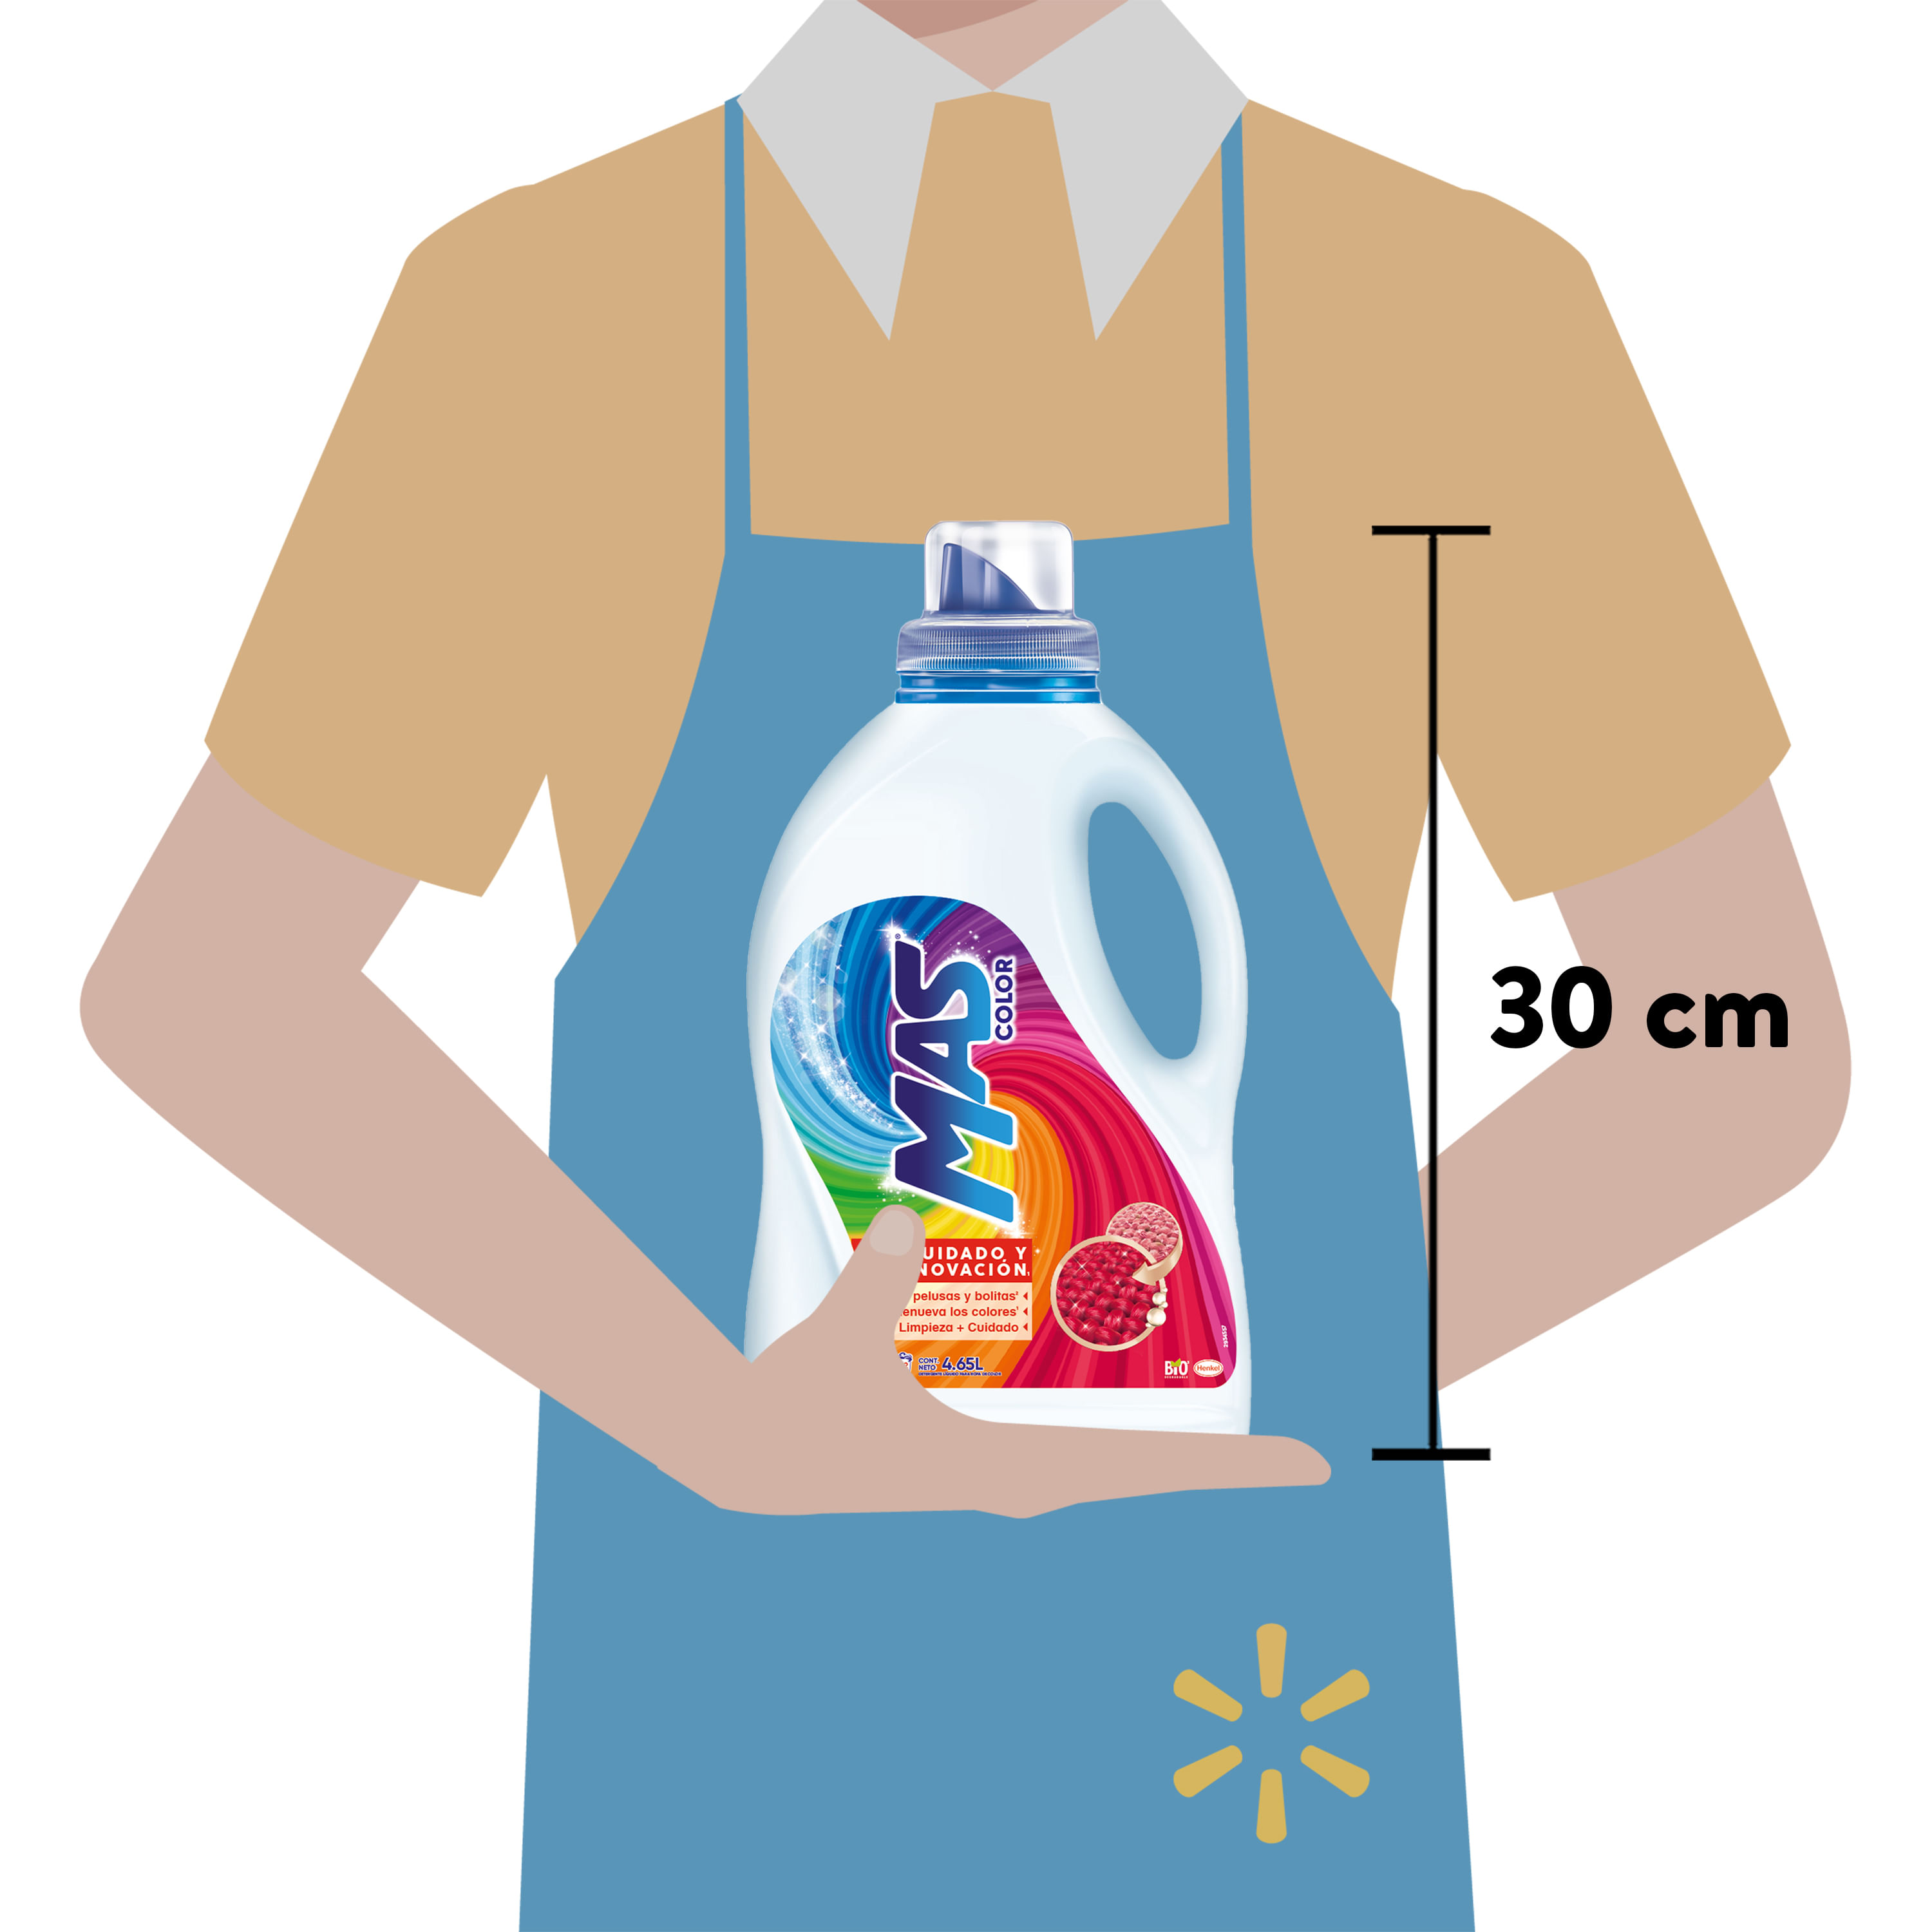 Comprar Detergente Líquido MAS Color - 5Lt